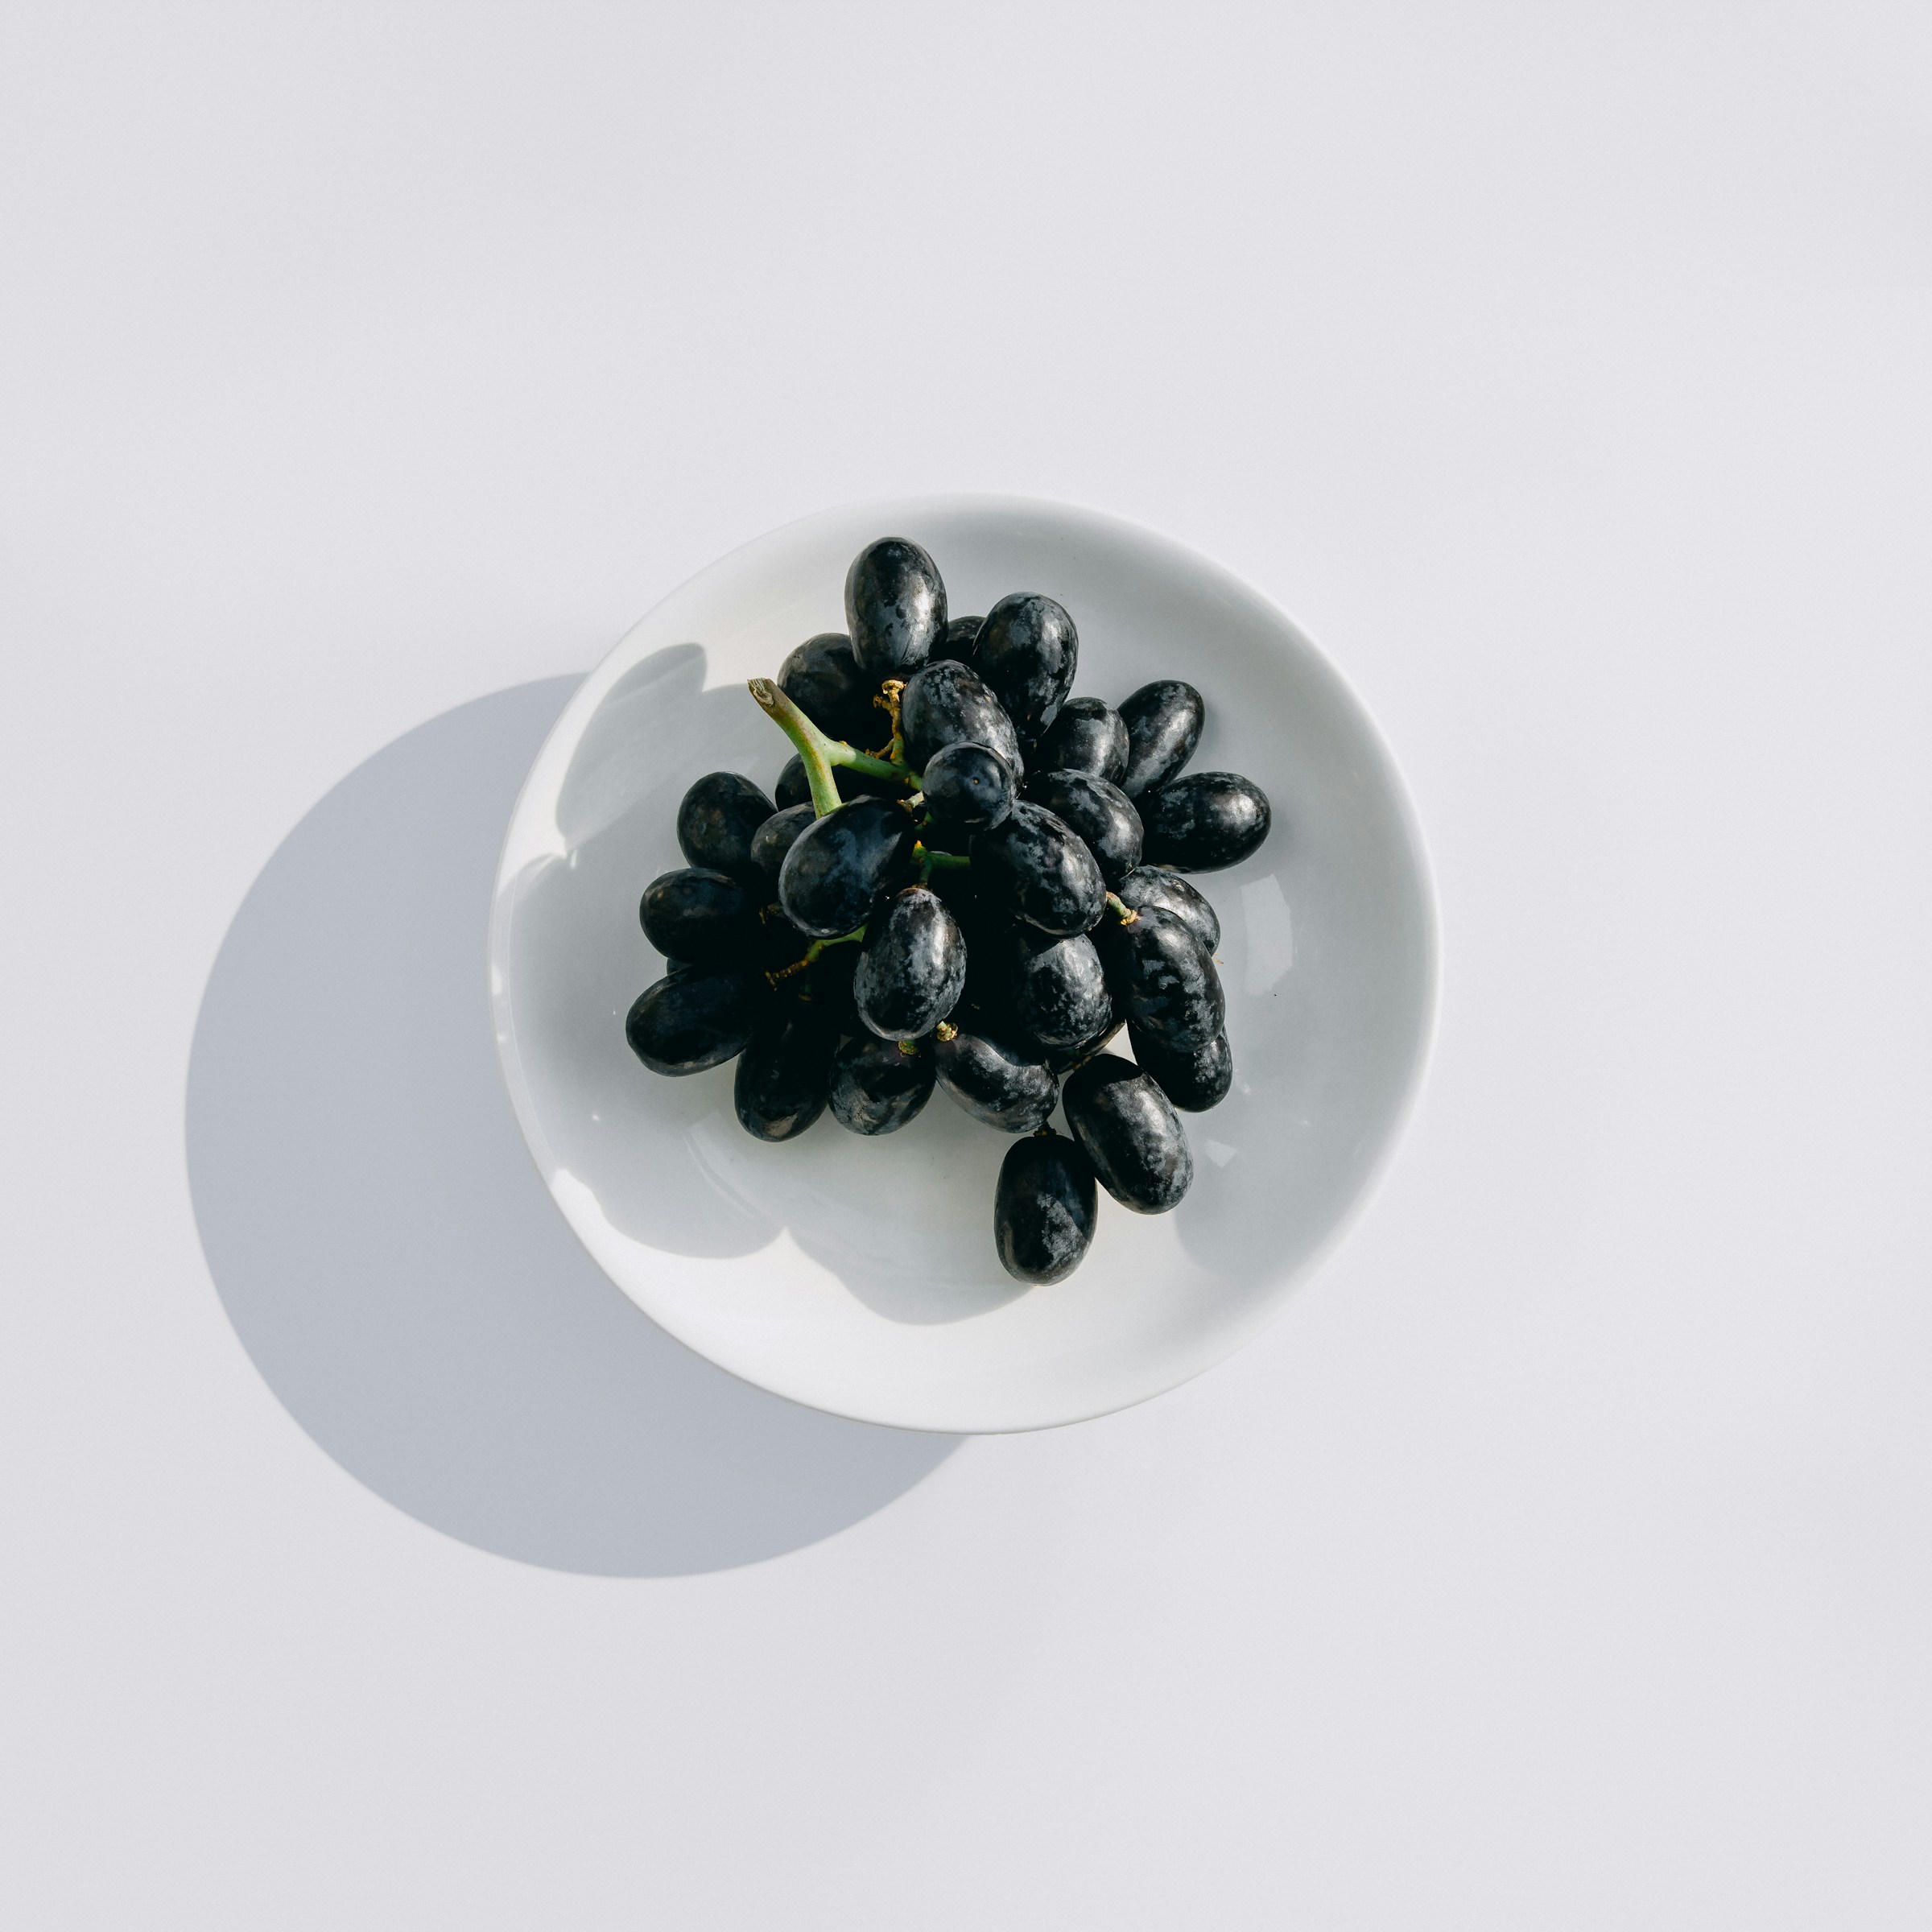 Eine Schale mit Weintrauben | Quelle: Unsplash